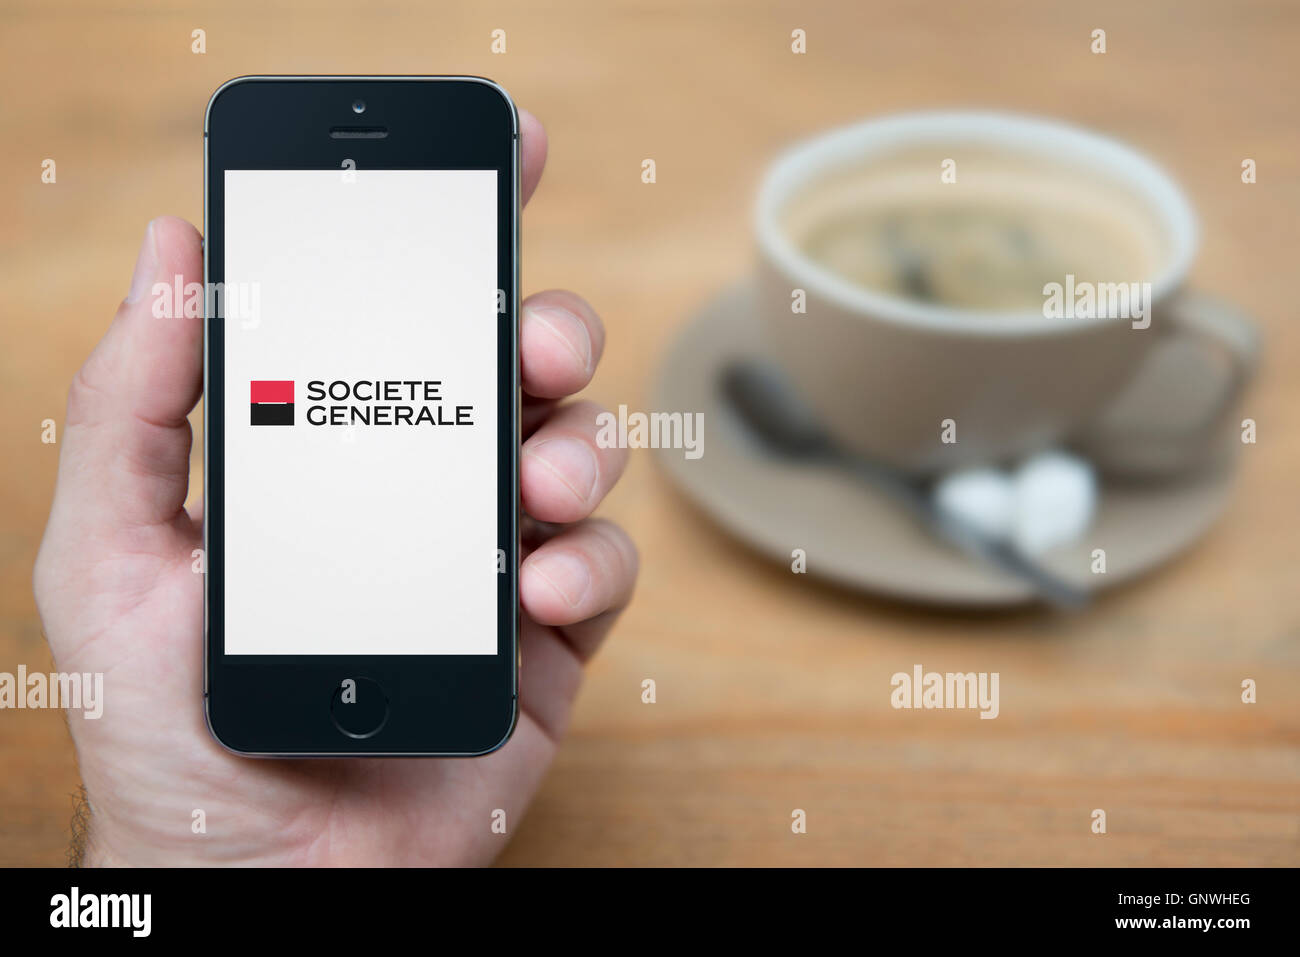 Ein Mann schaut auf seinem iPhone das Logo der Societe Generale Bank anzeigt, während bei einer Tasse Kaffee (nur zur redaktionellen Verwendung) saß. Stockfoto